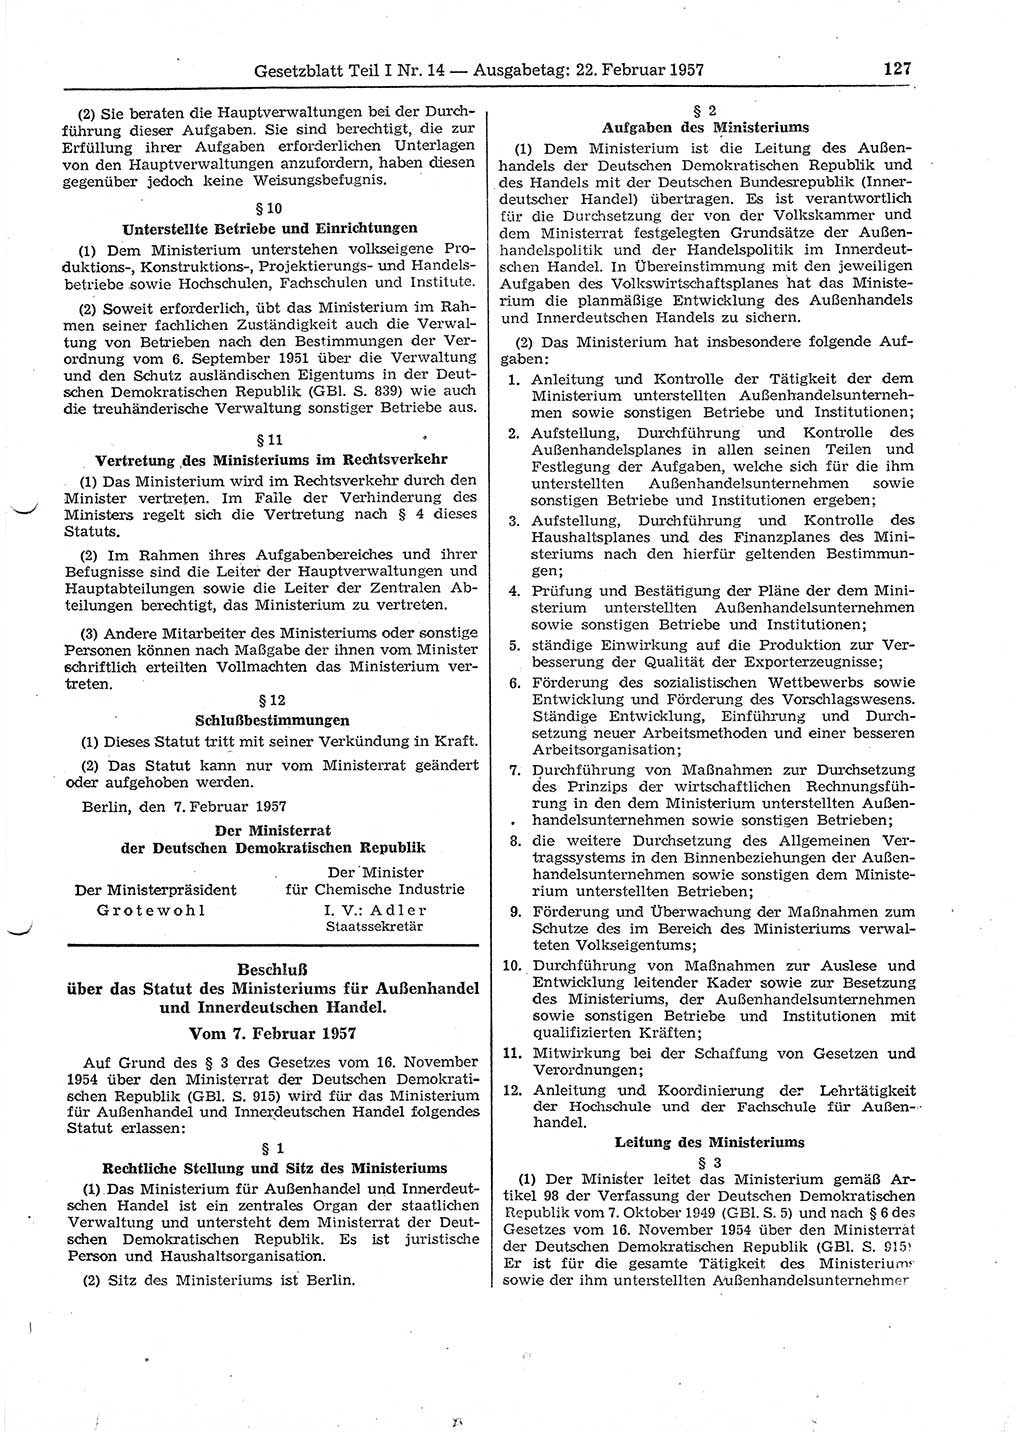 Gesetzblatt (GBl.) der Deutschen Demokratischen Republik (DDR) Teil Ⅰ 1957, Seite 127 (GBl. DDR Ⅰ 1957, S. 127)